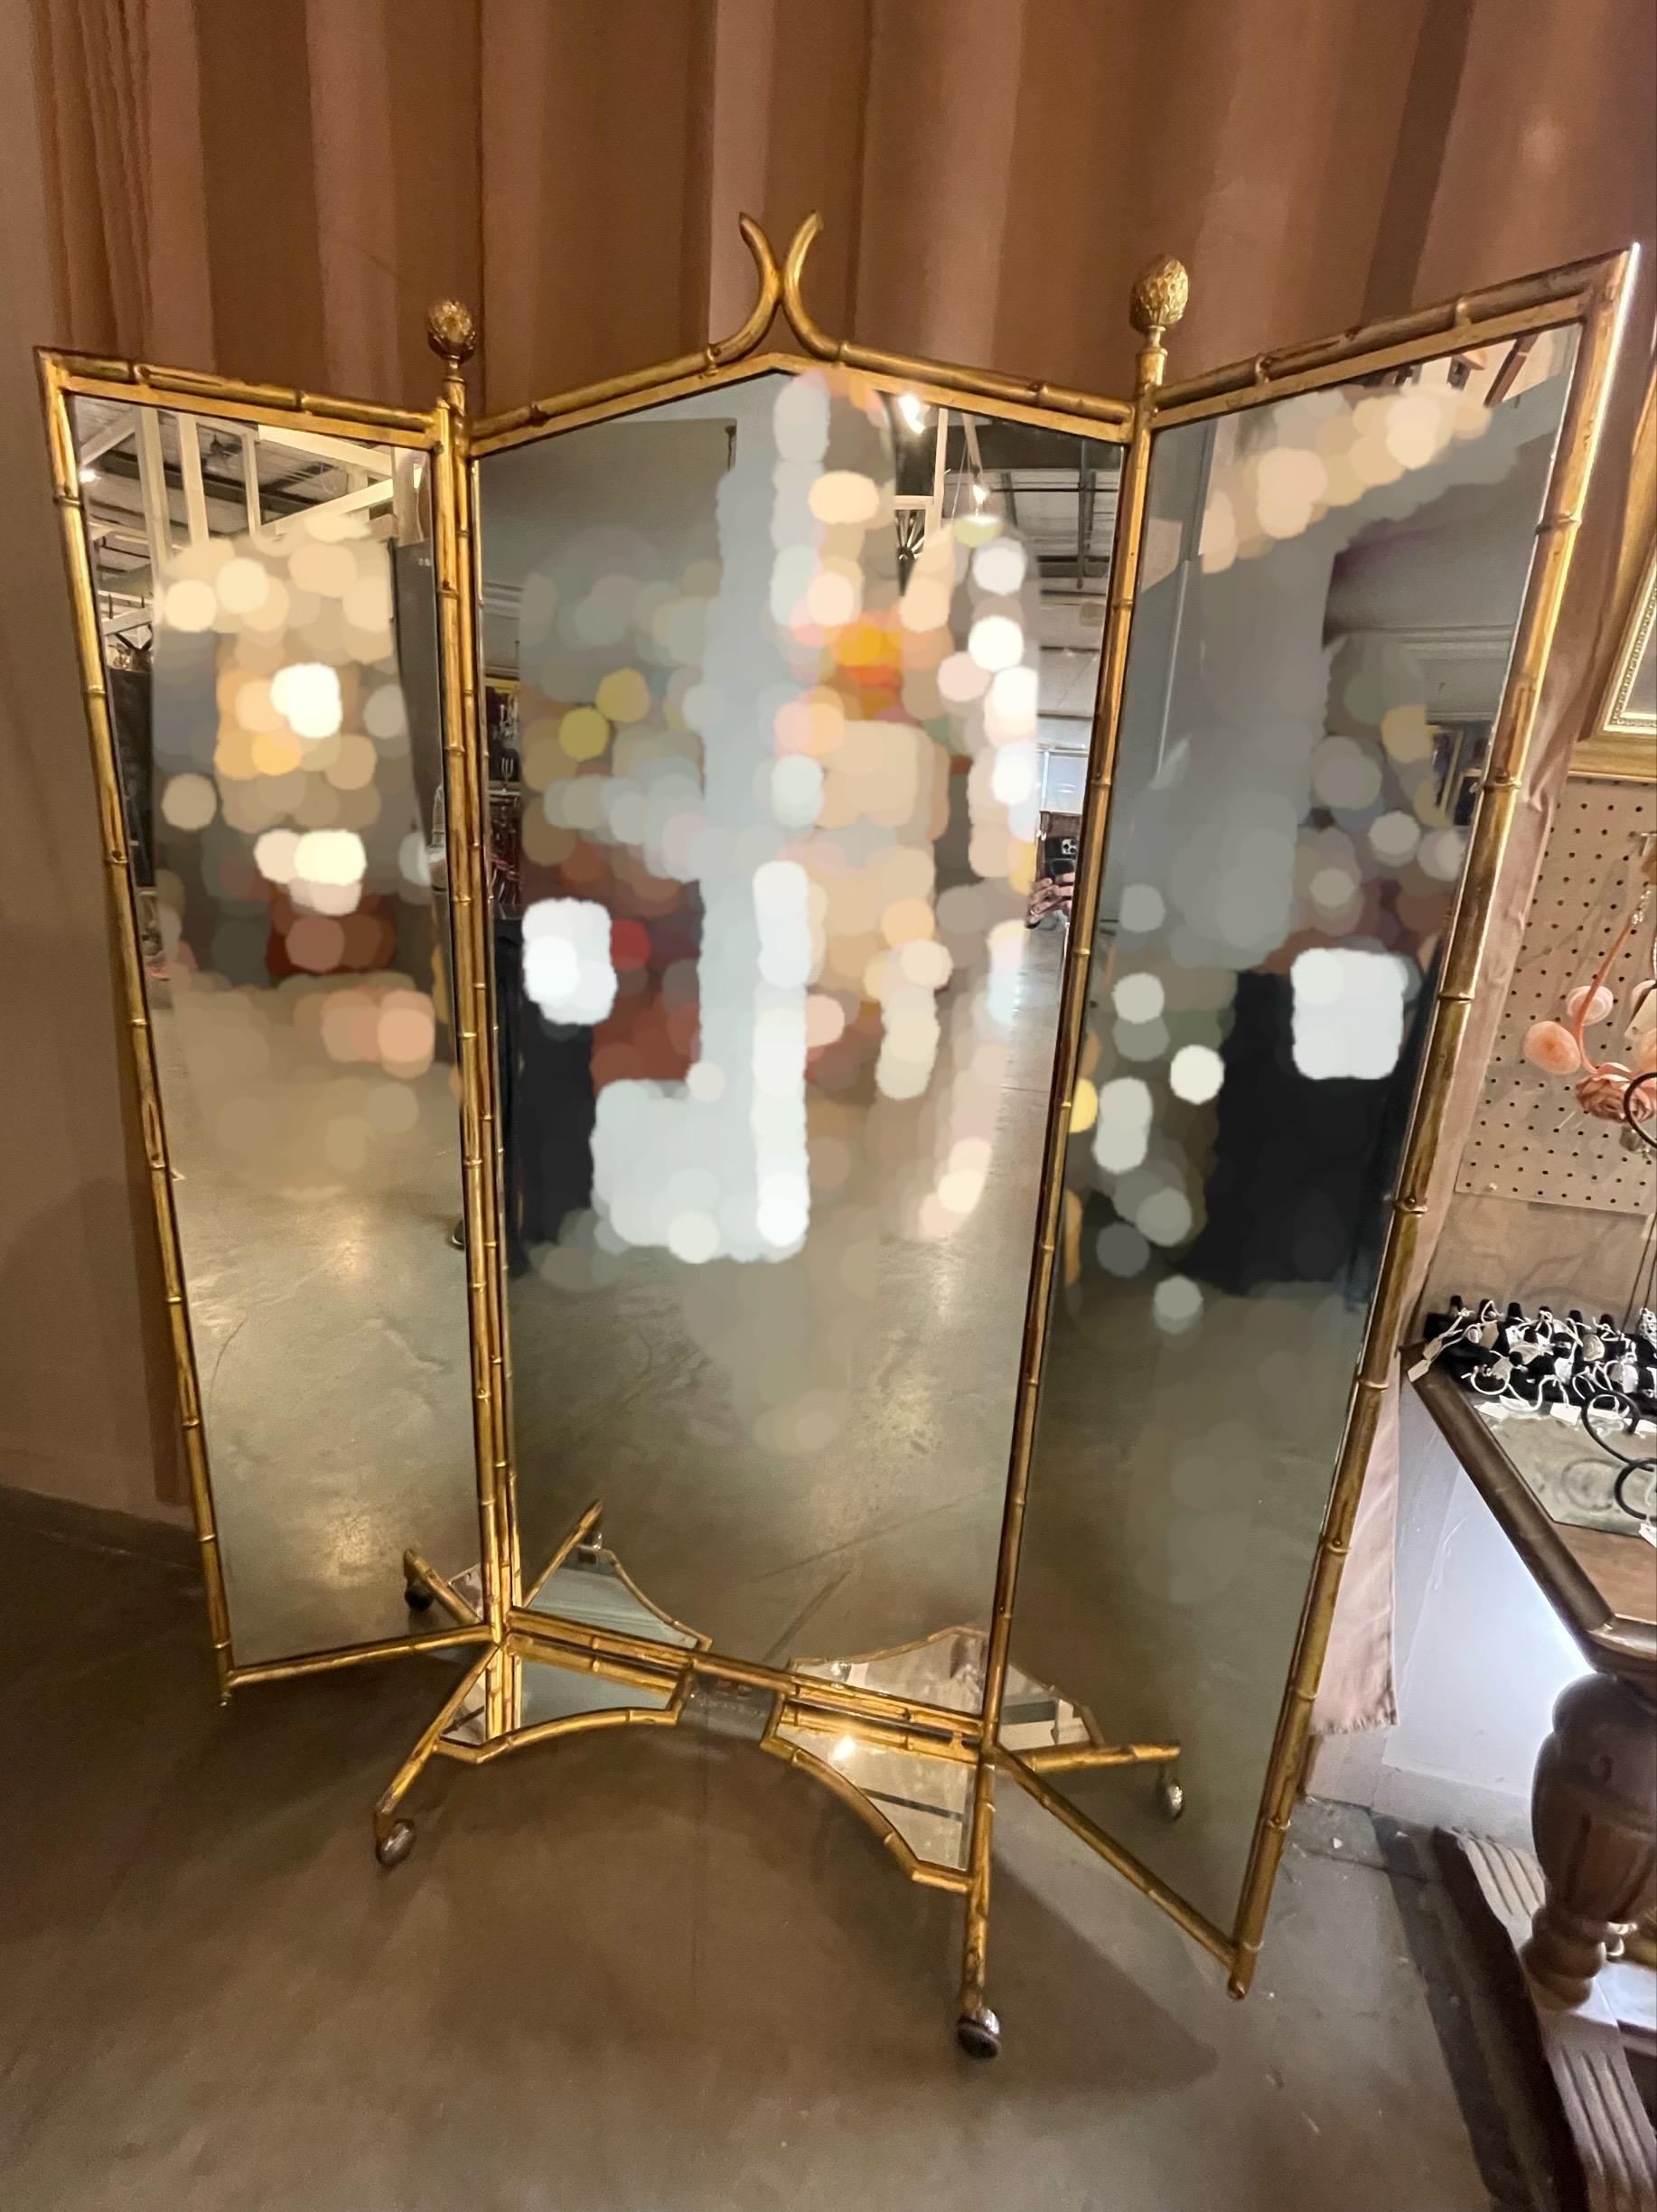 Miroir de cheval à trois entrées (triptyque) en faux bambou doré, de style victorien français.

Miroir tryptique en laiton de la célèbre maison Miroir Brot de Paris. Les miroirs encadrés en laiton massif portent le label Brot. Les trois miroirs sont